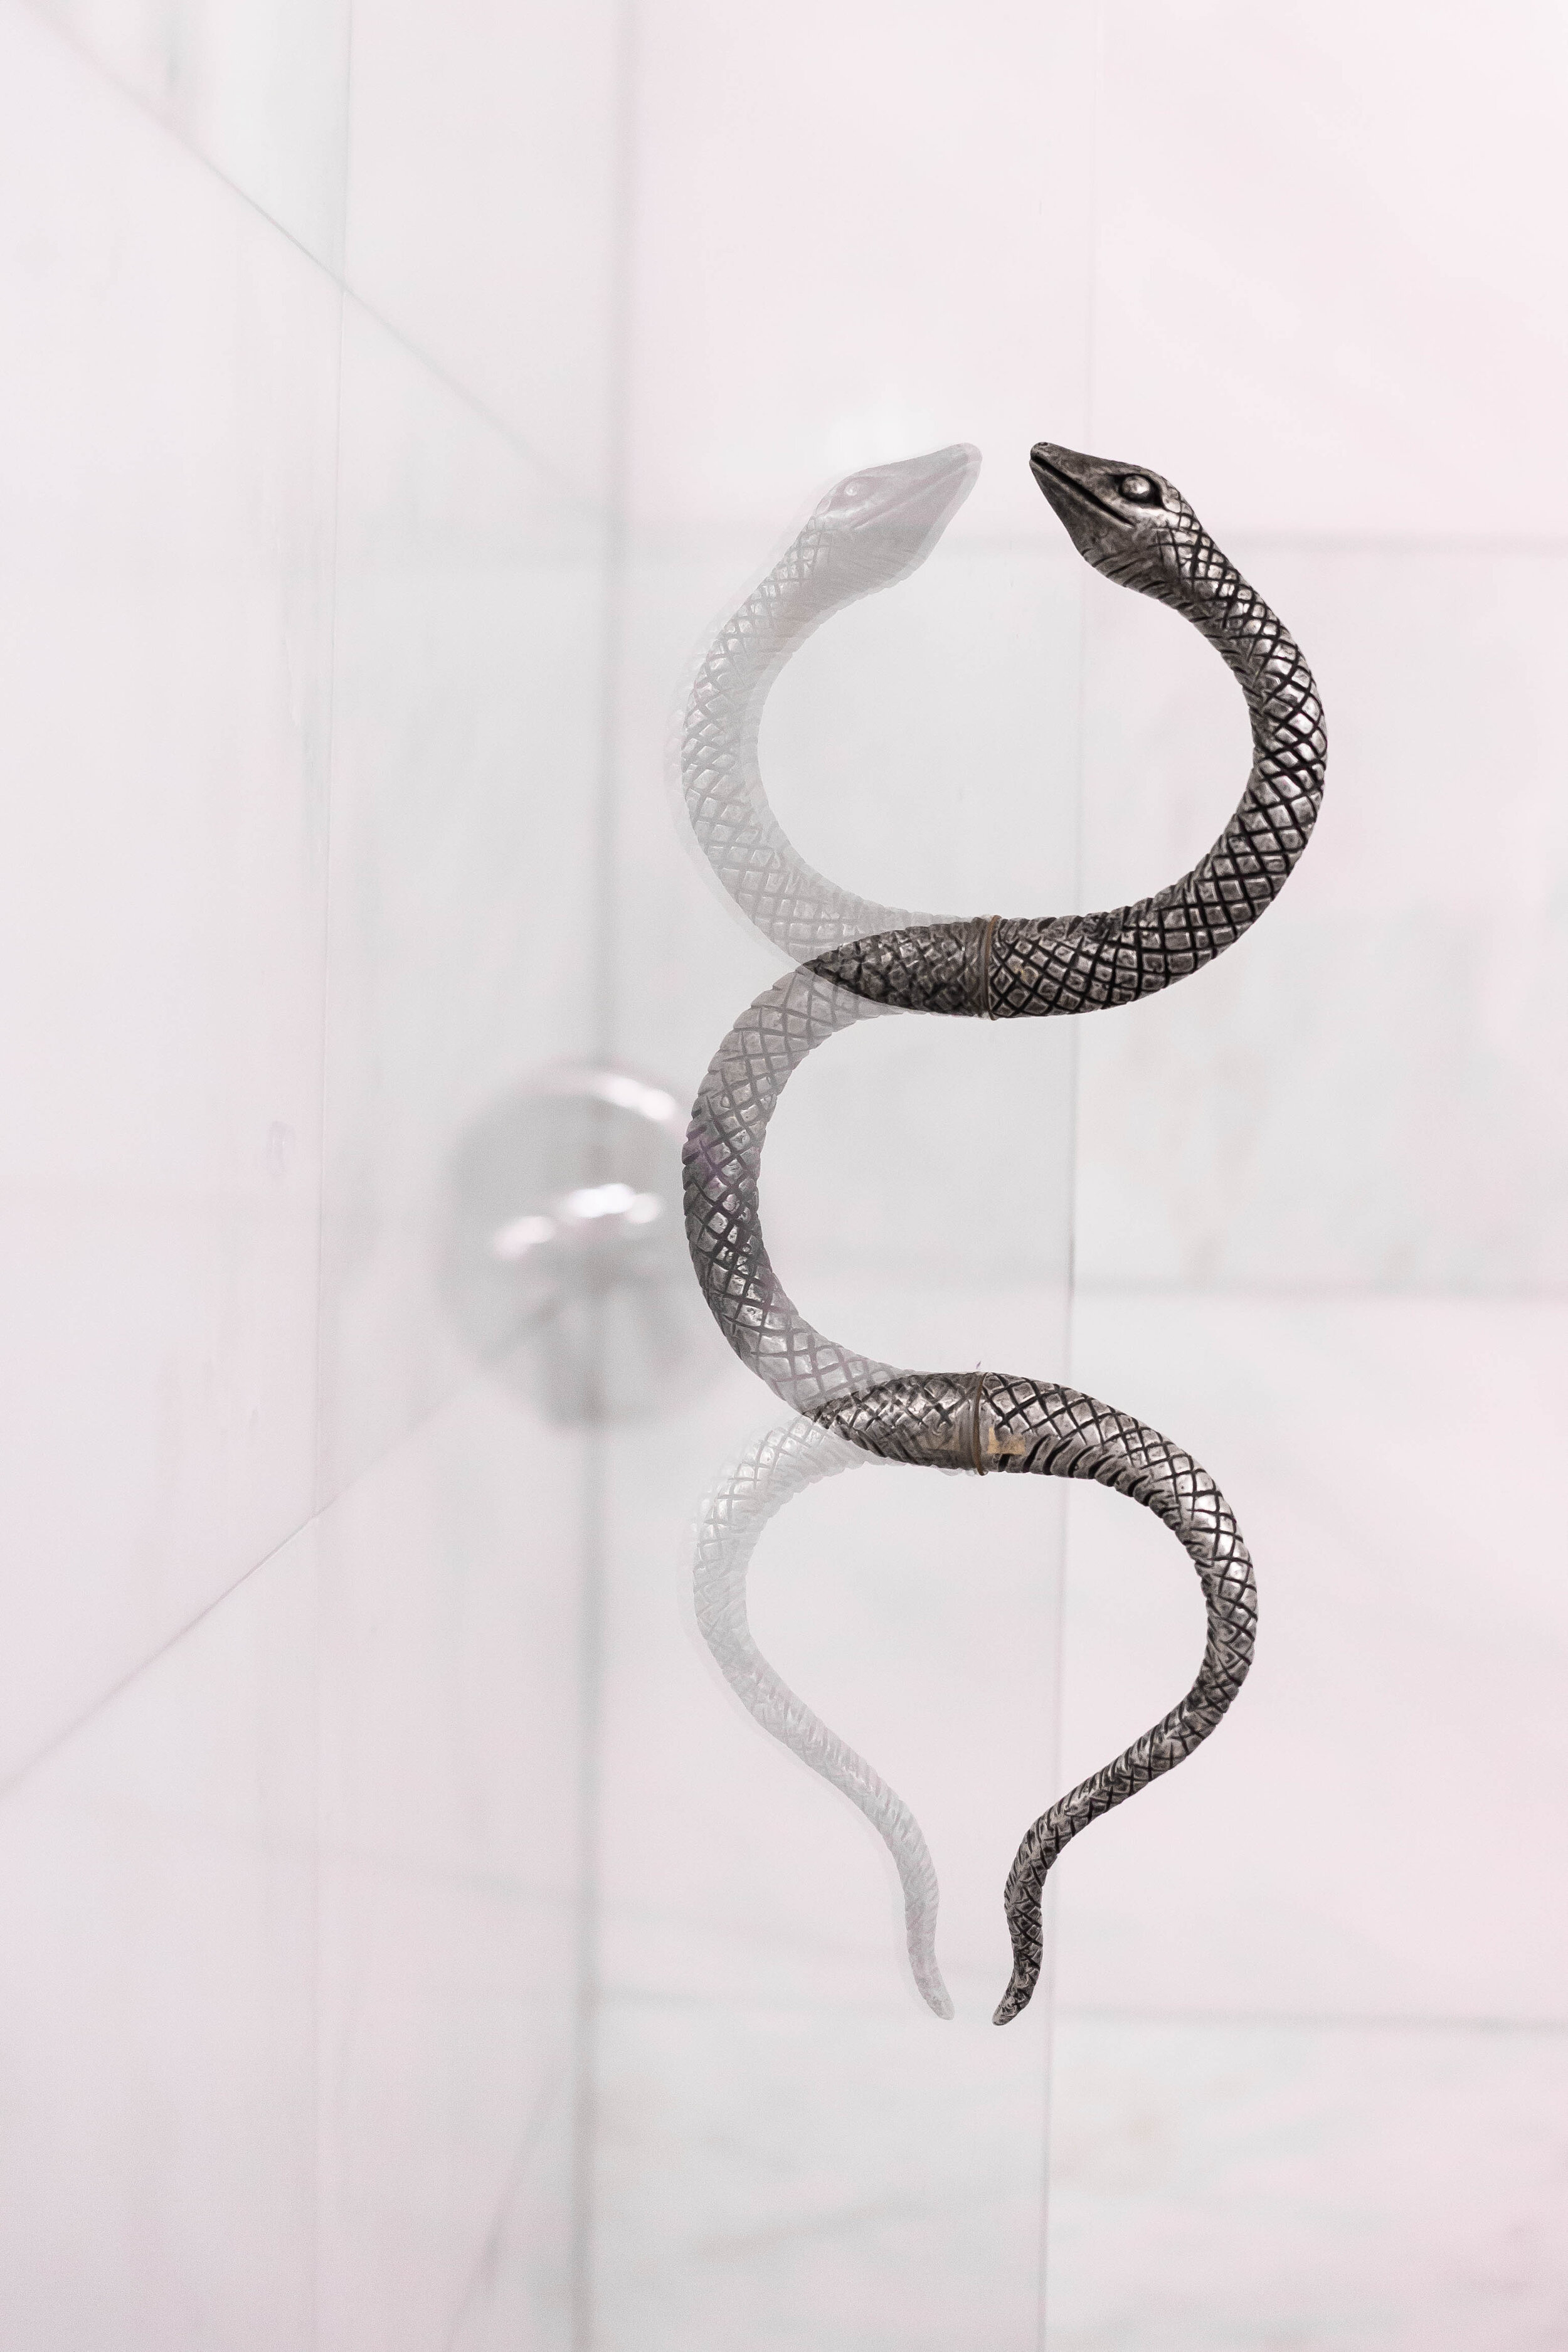 Snake shower door handle - Picture of Maison de la Luz, New Orleans -  Tripadvisor